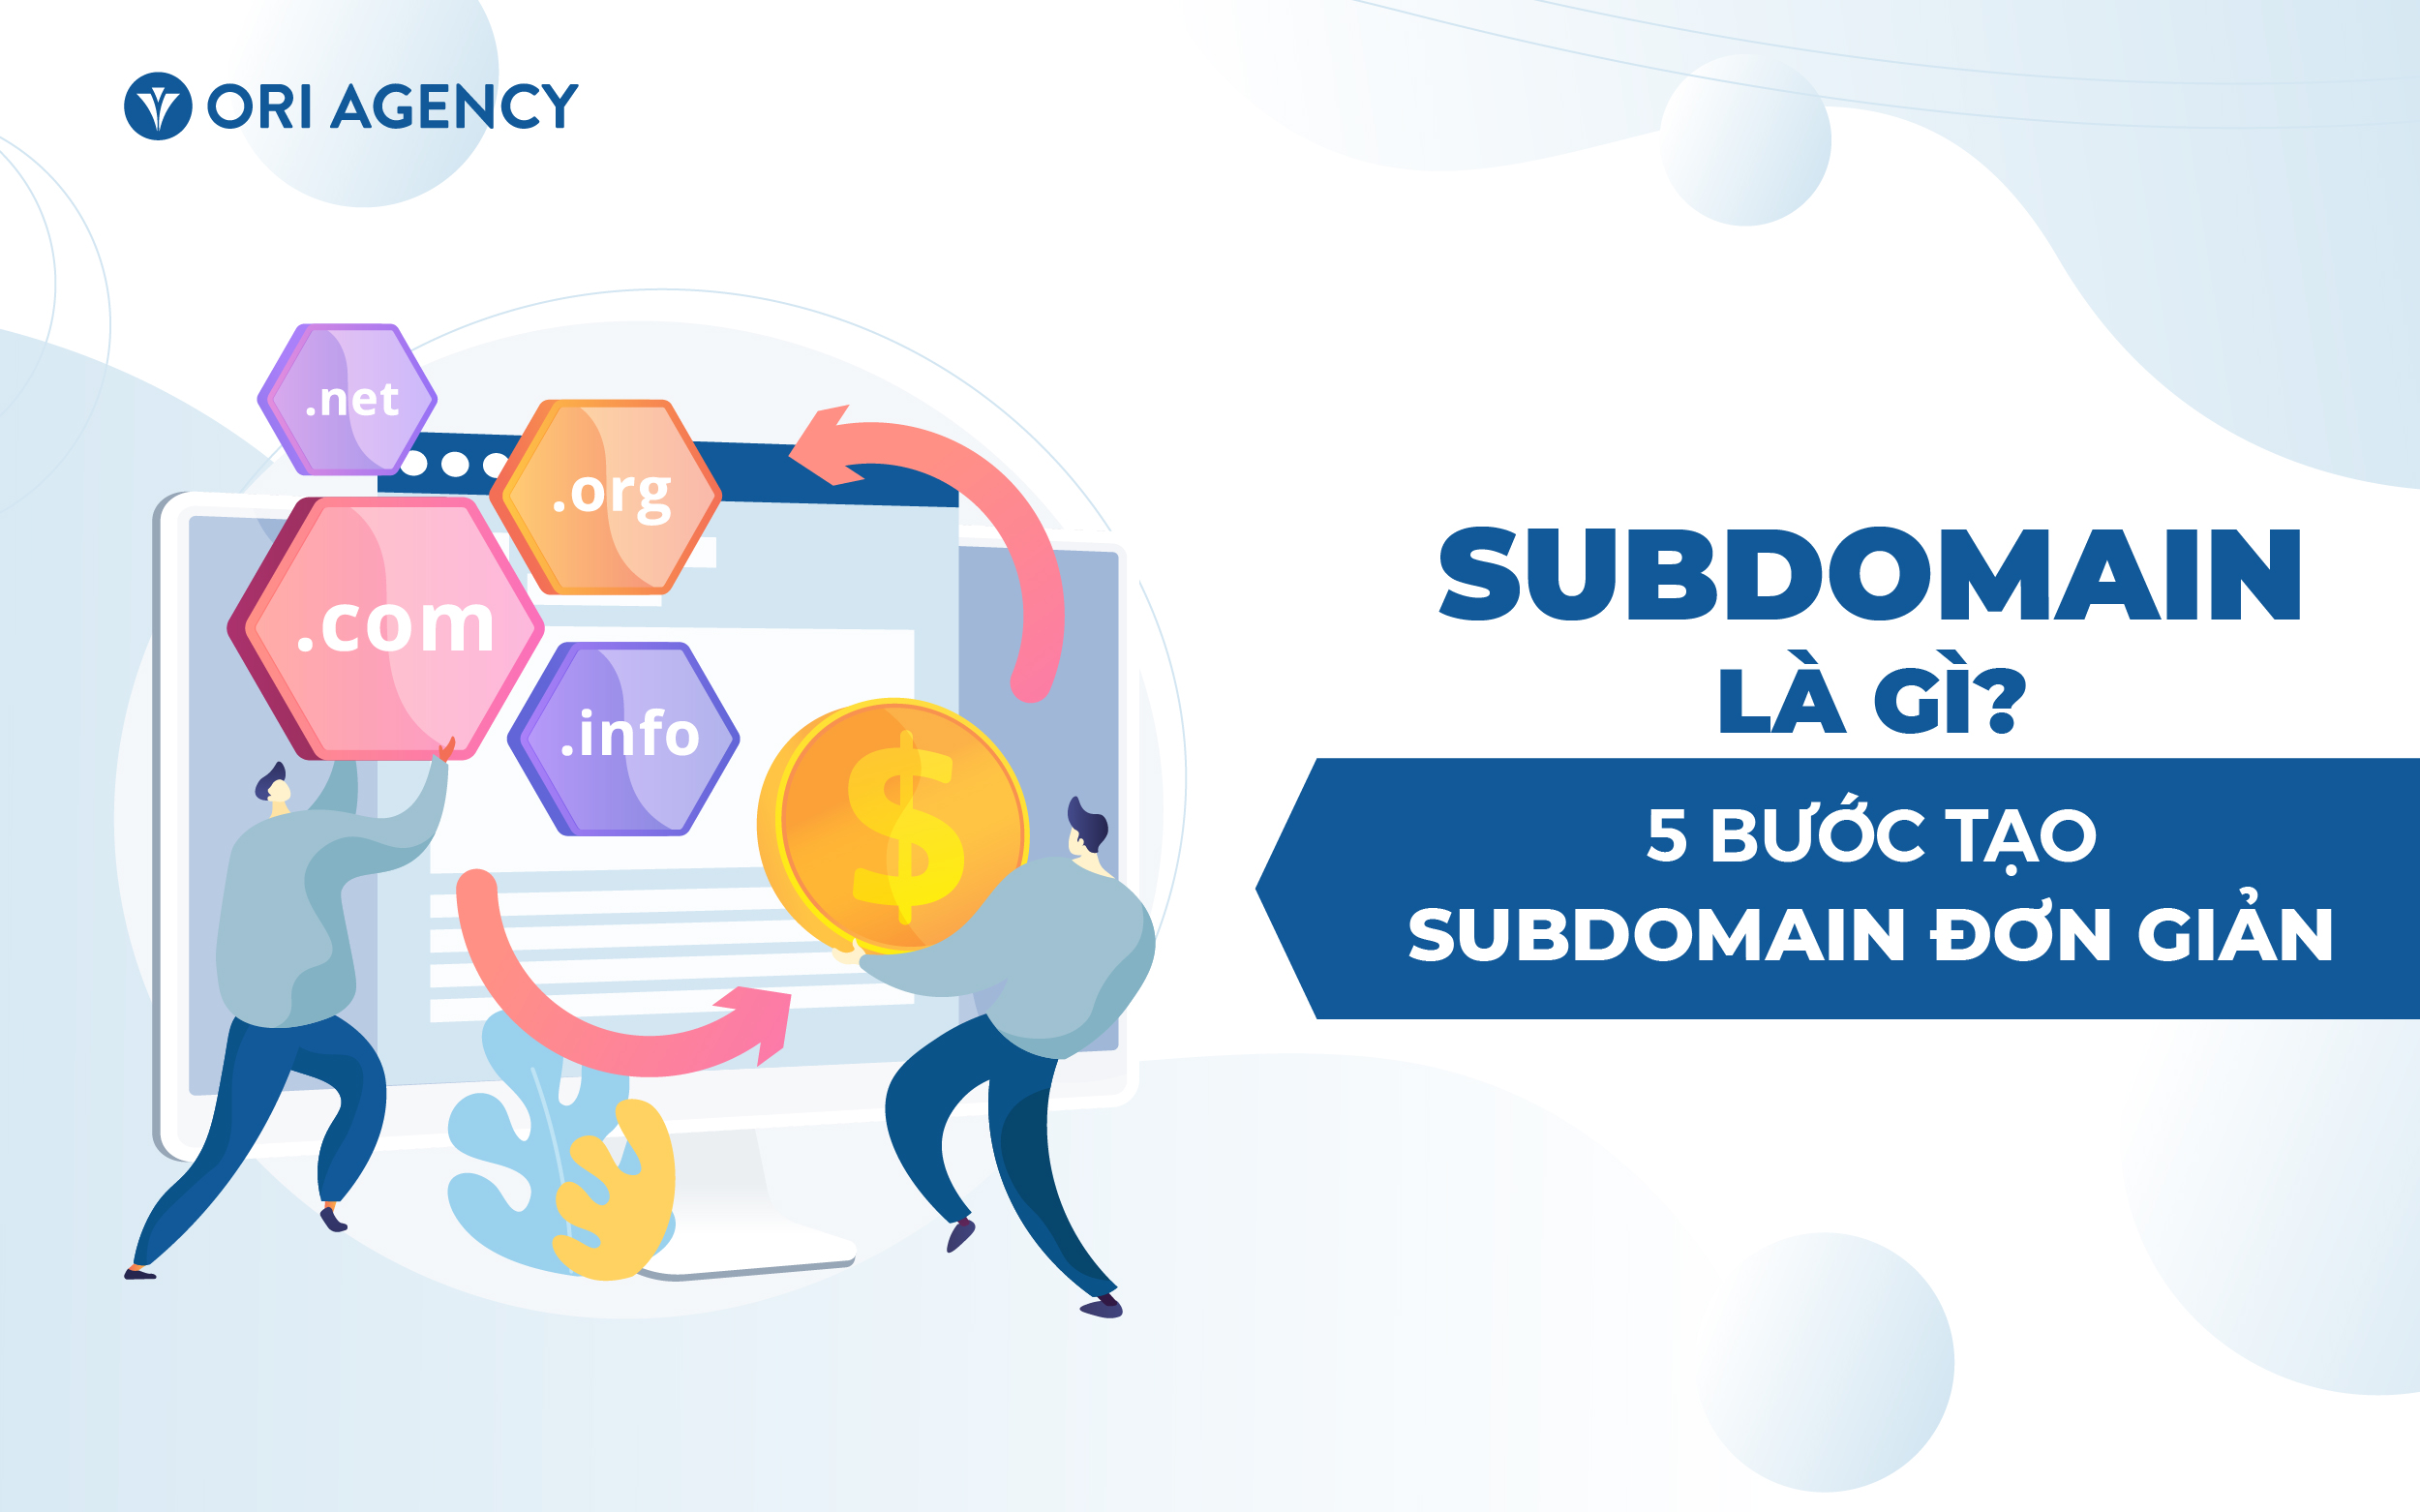 Subdomain là gì? 5 Bước tạo Subdomain đơn giản ai cũng làm được